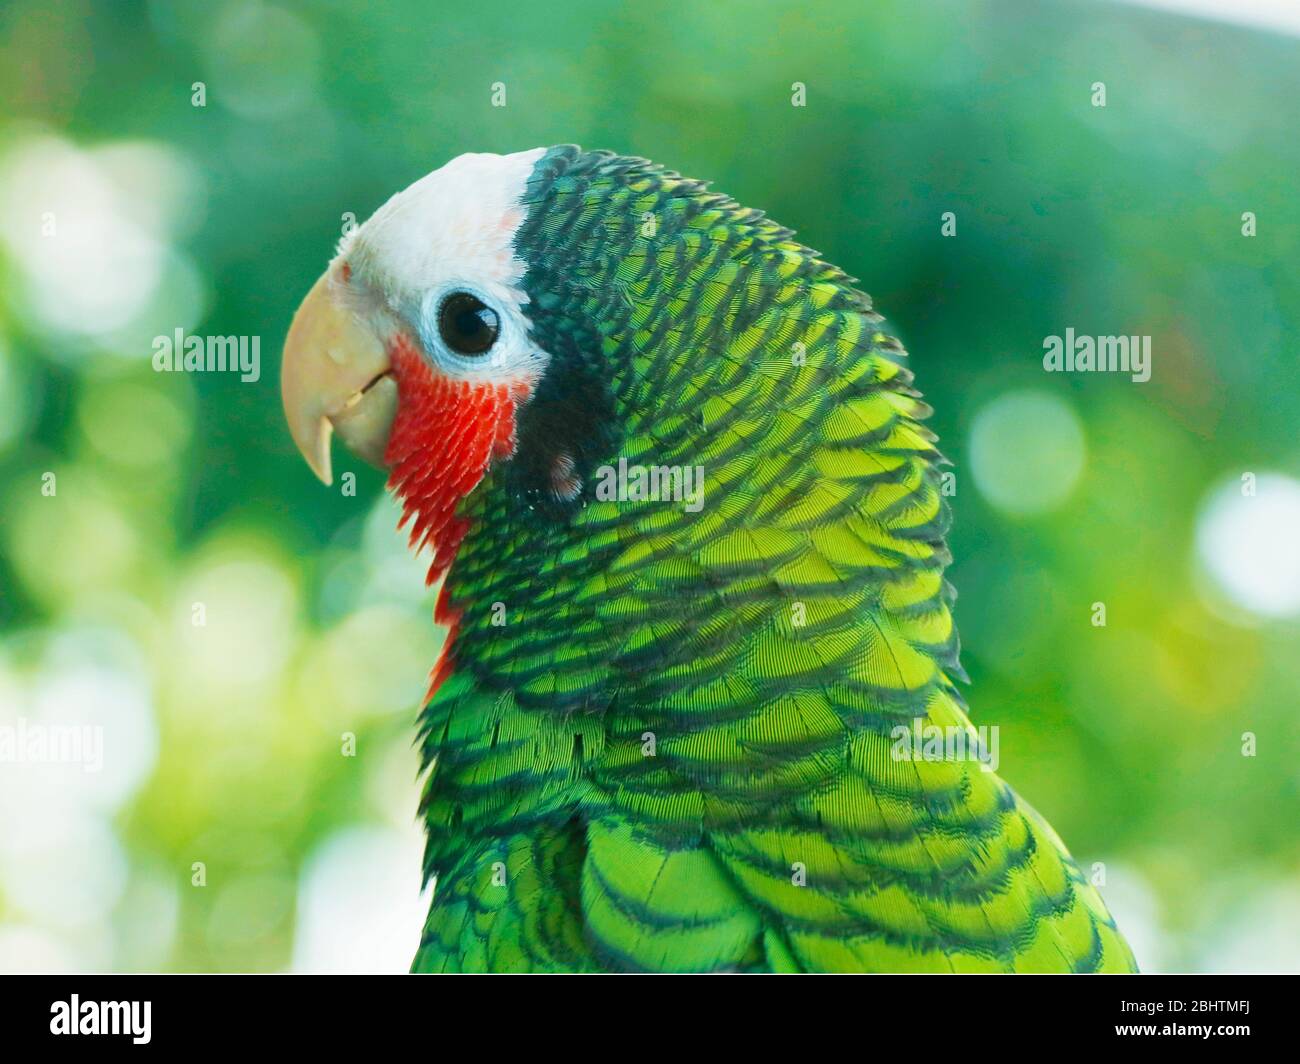 Der amazonas-Rosenkehl, der kubanische amazonas, auch Kubanischer Papagei oder Rosenkehl-Papagei genannt, ist ein mittelgroßer, hauptsächlich grüner Papagei, der in Wäldern gefunden wird Stockfoto